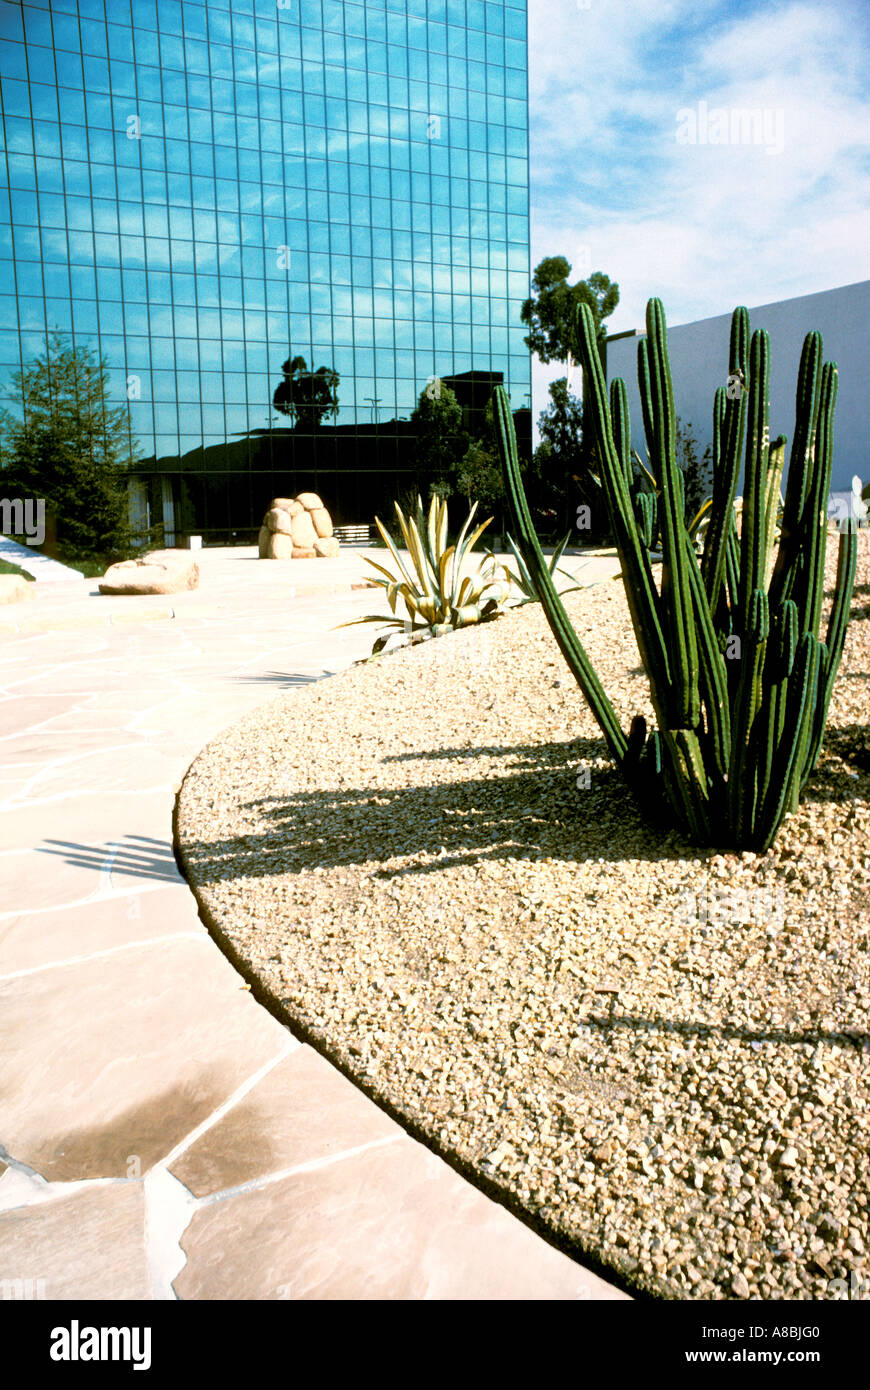 Costa Mesa, Californie Noguchi Art Sculpture Garden Banque D'Images